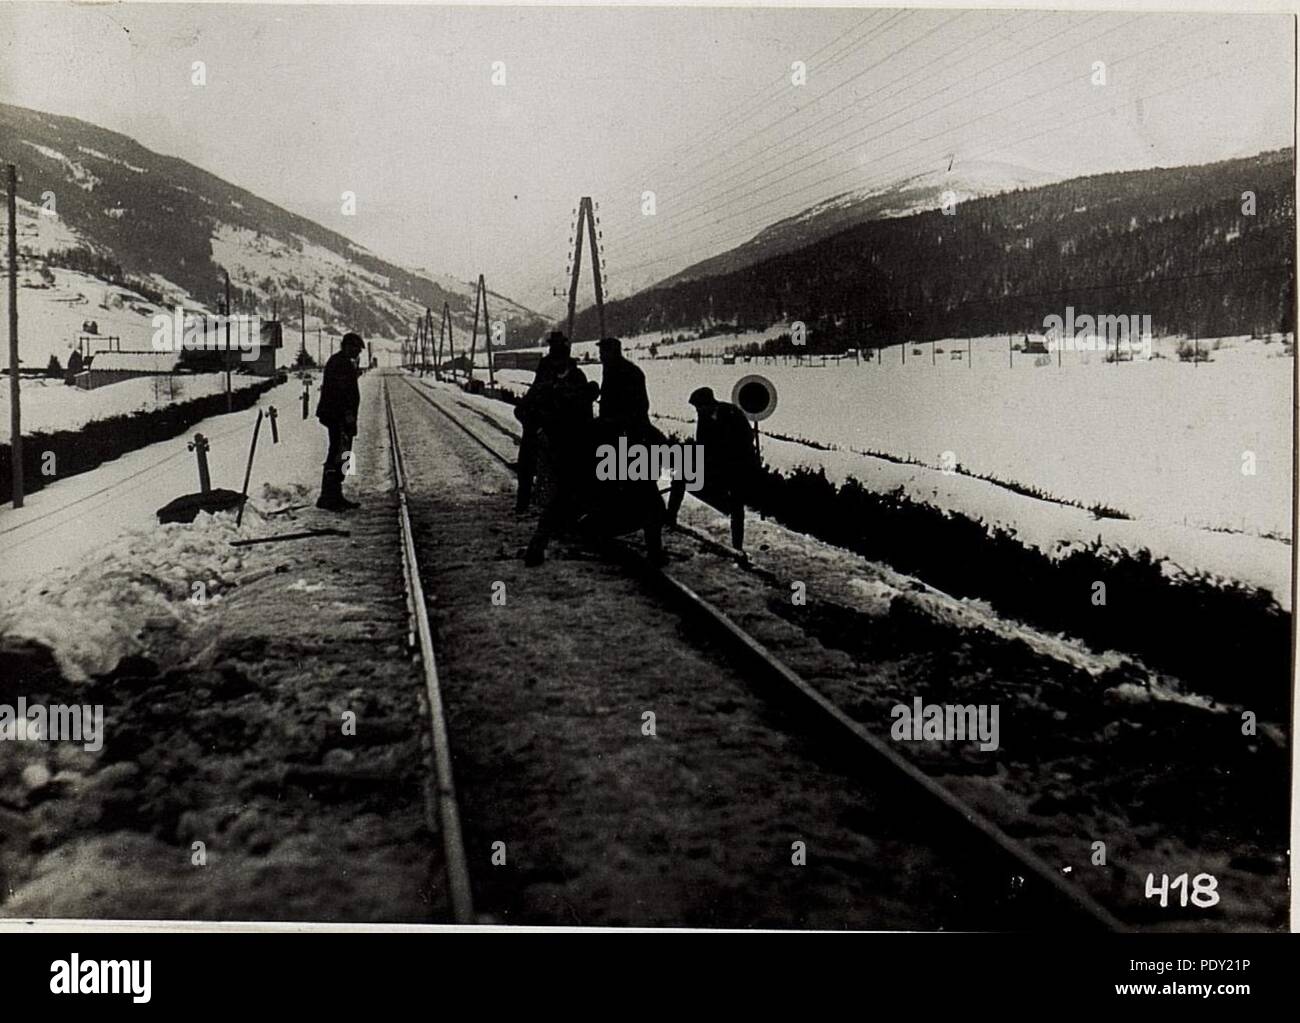 Arbeiter reparieren die Stelle an der Bahn zwischen Toblach und Innichen, an der italienischer 30er einfiel, 28.2.1916. Stock Photo